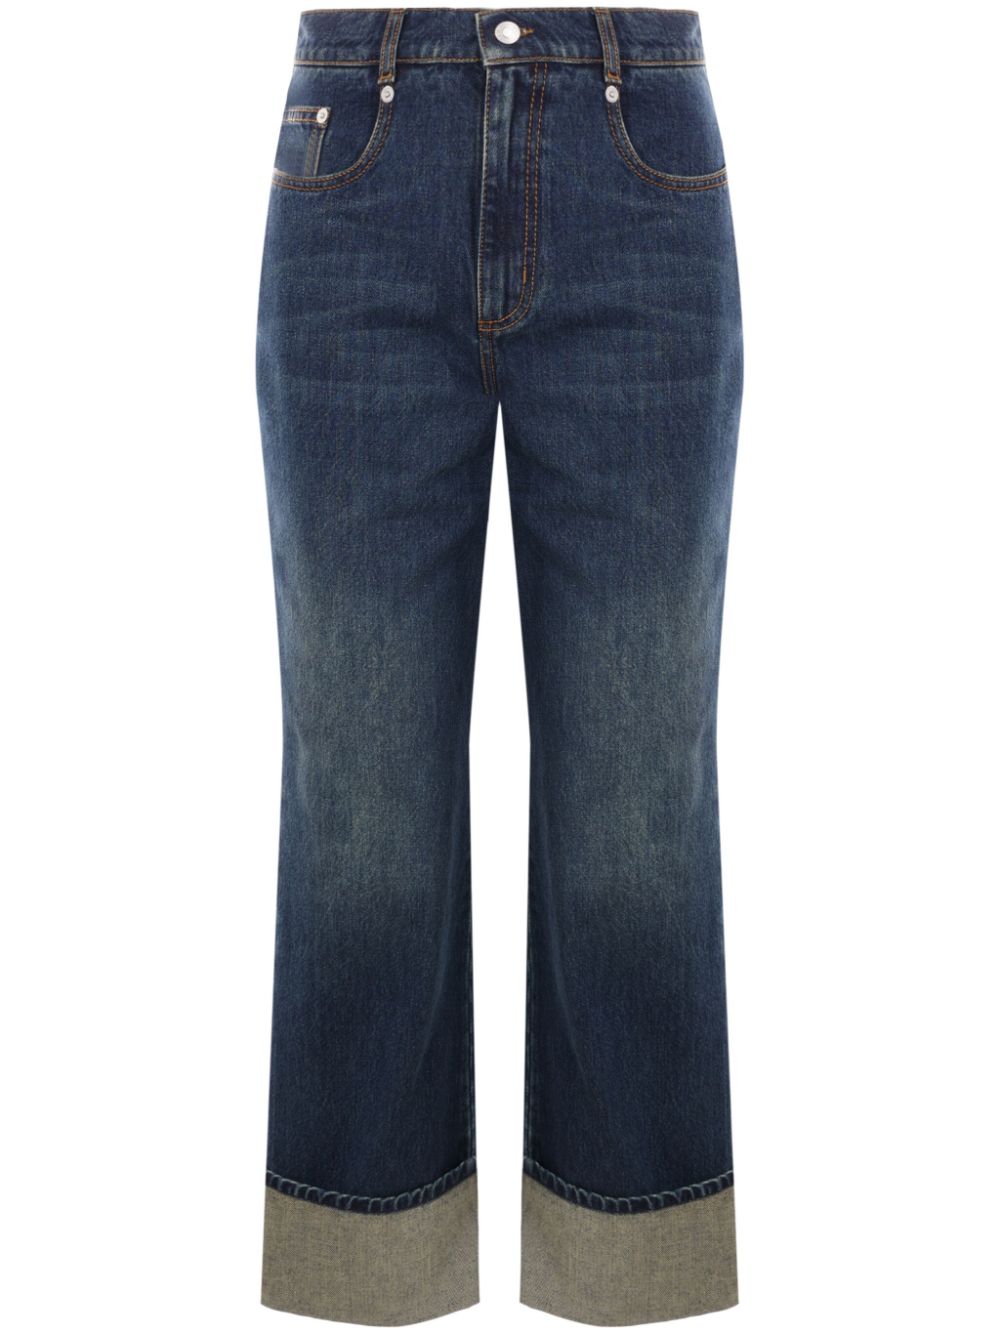 straigh-leg mid-rise jeans